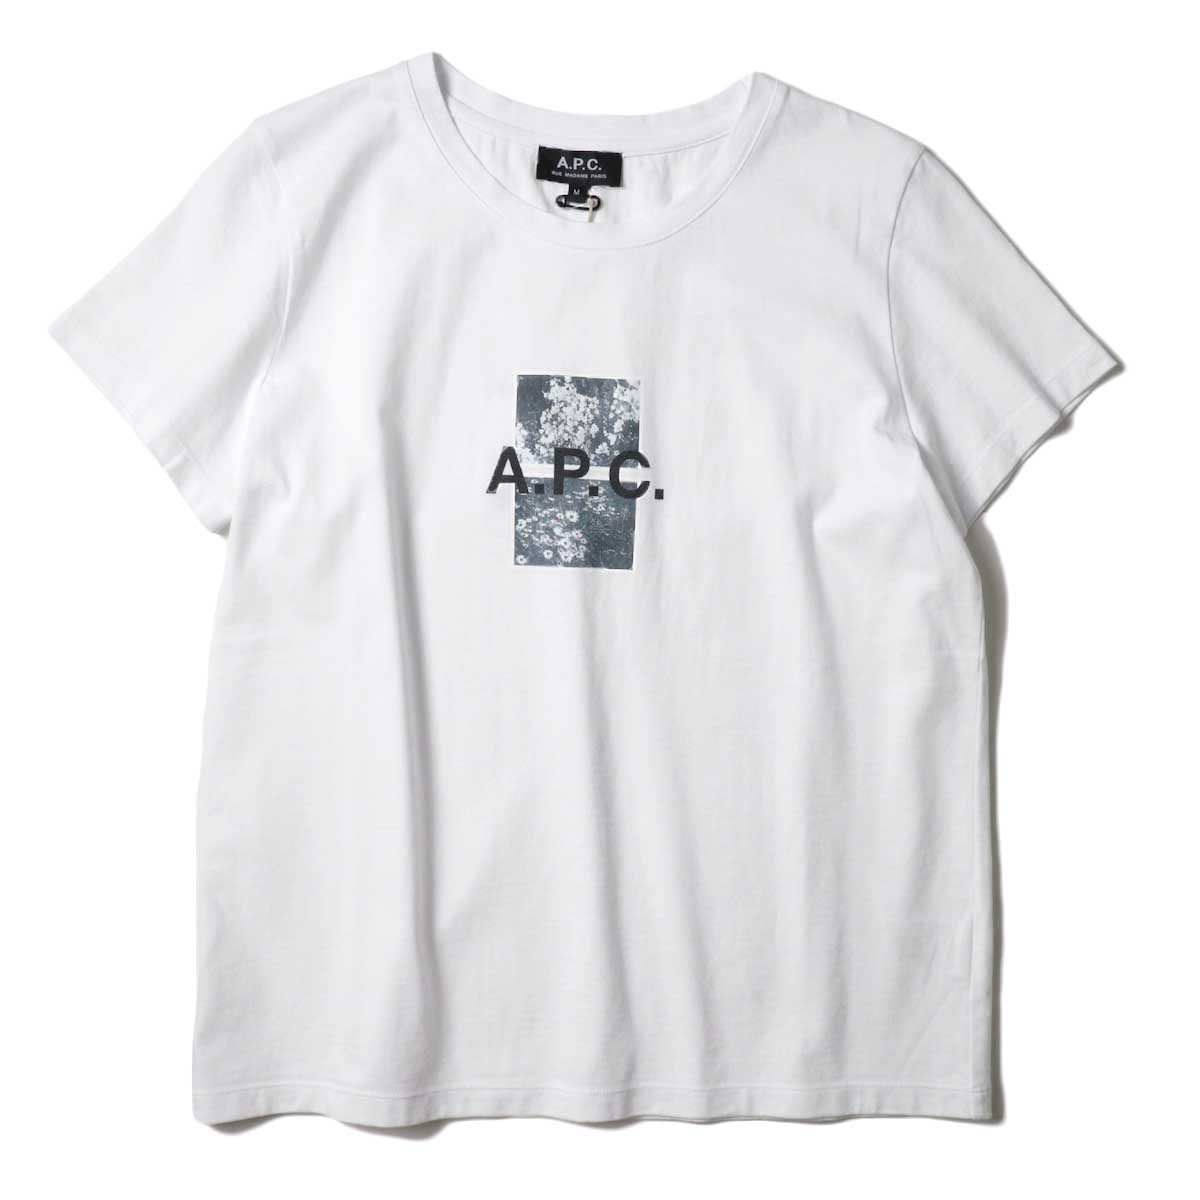 A.P.C. / ERYN Tシャツ (White)